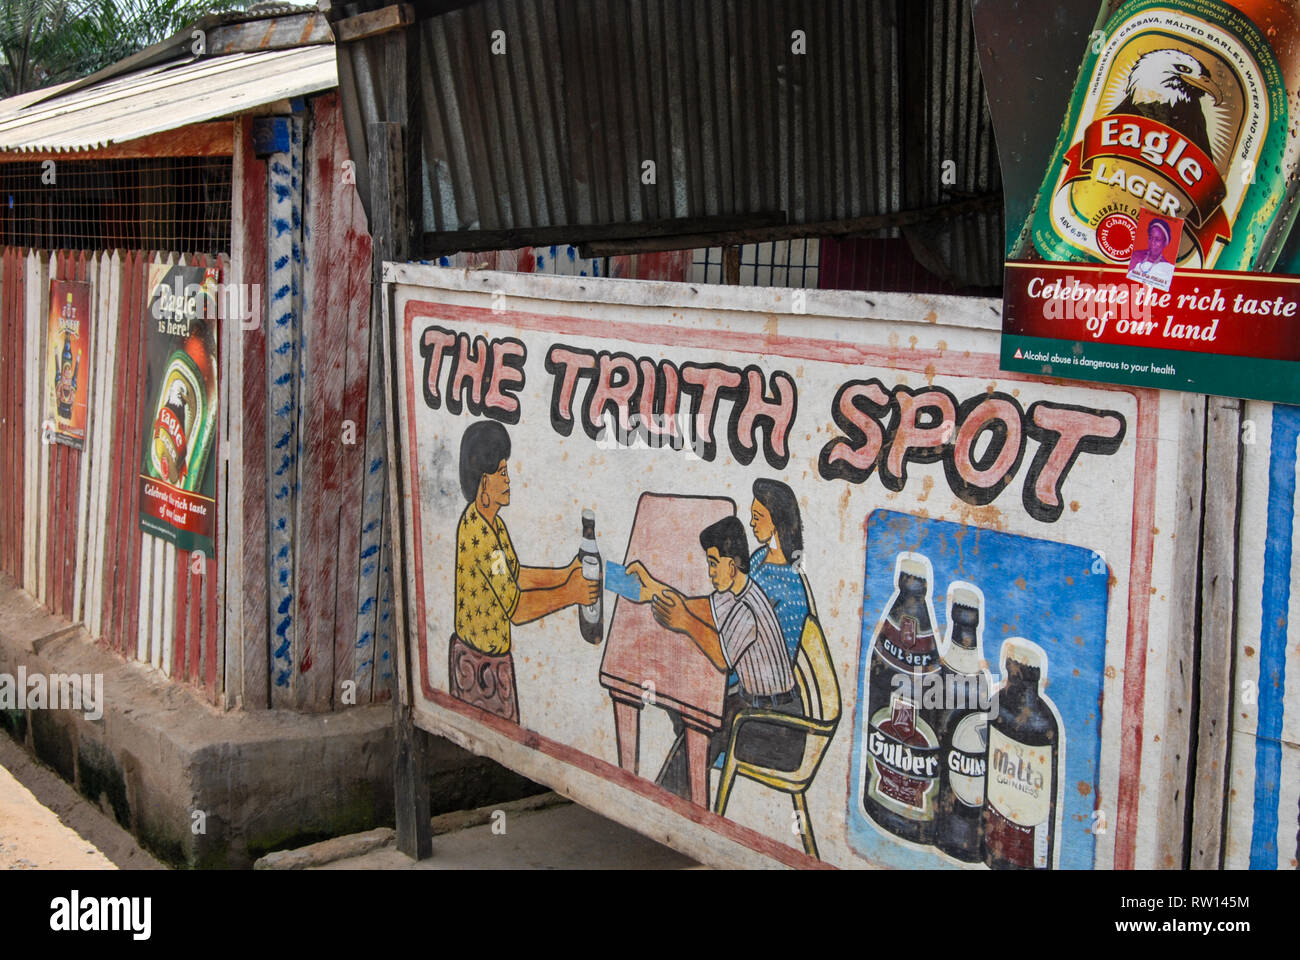 Una foto di strada della facciata e pubblicità segno di un locale pub o bar chiamato la verità spot in Ghana, la città di Elmina, Africa occidentale Foto Stock